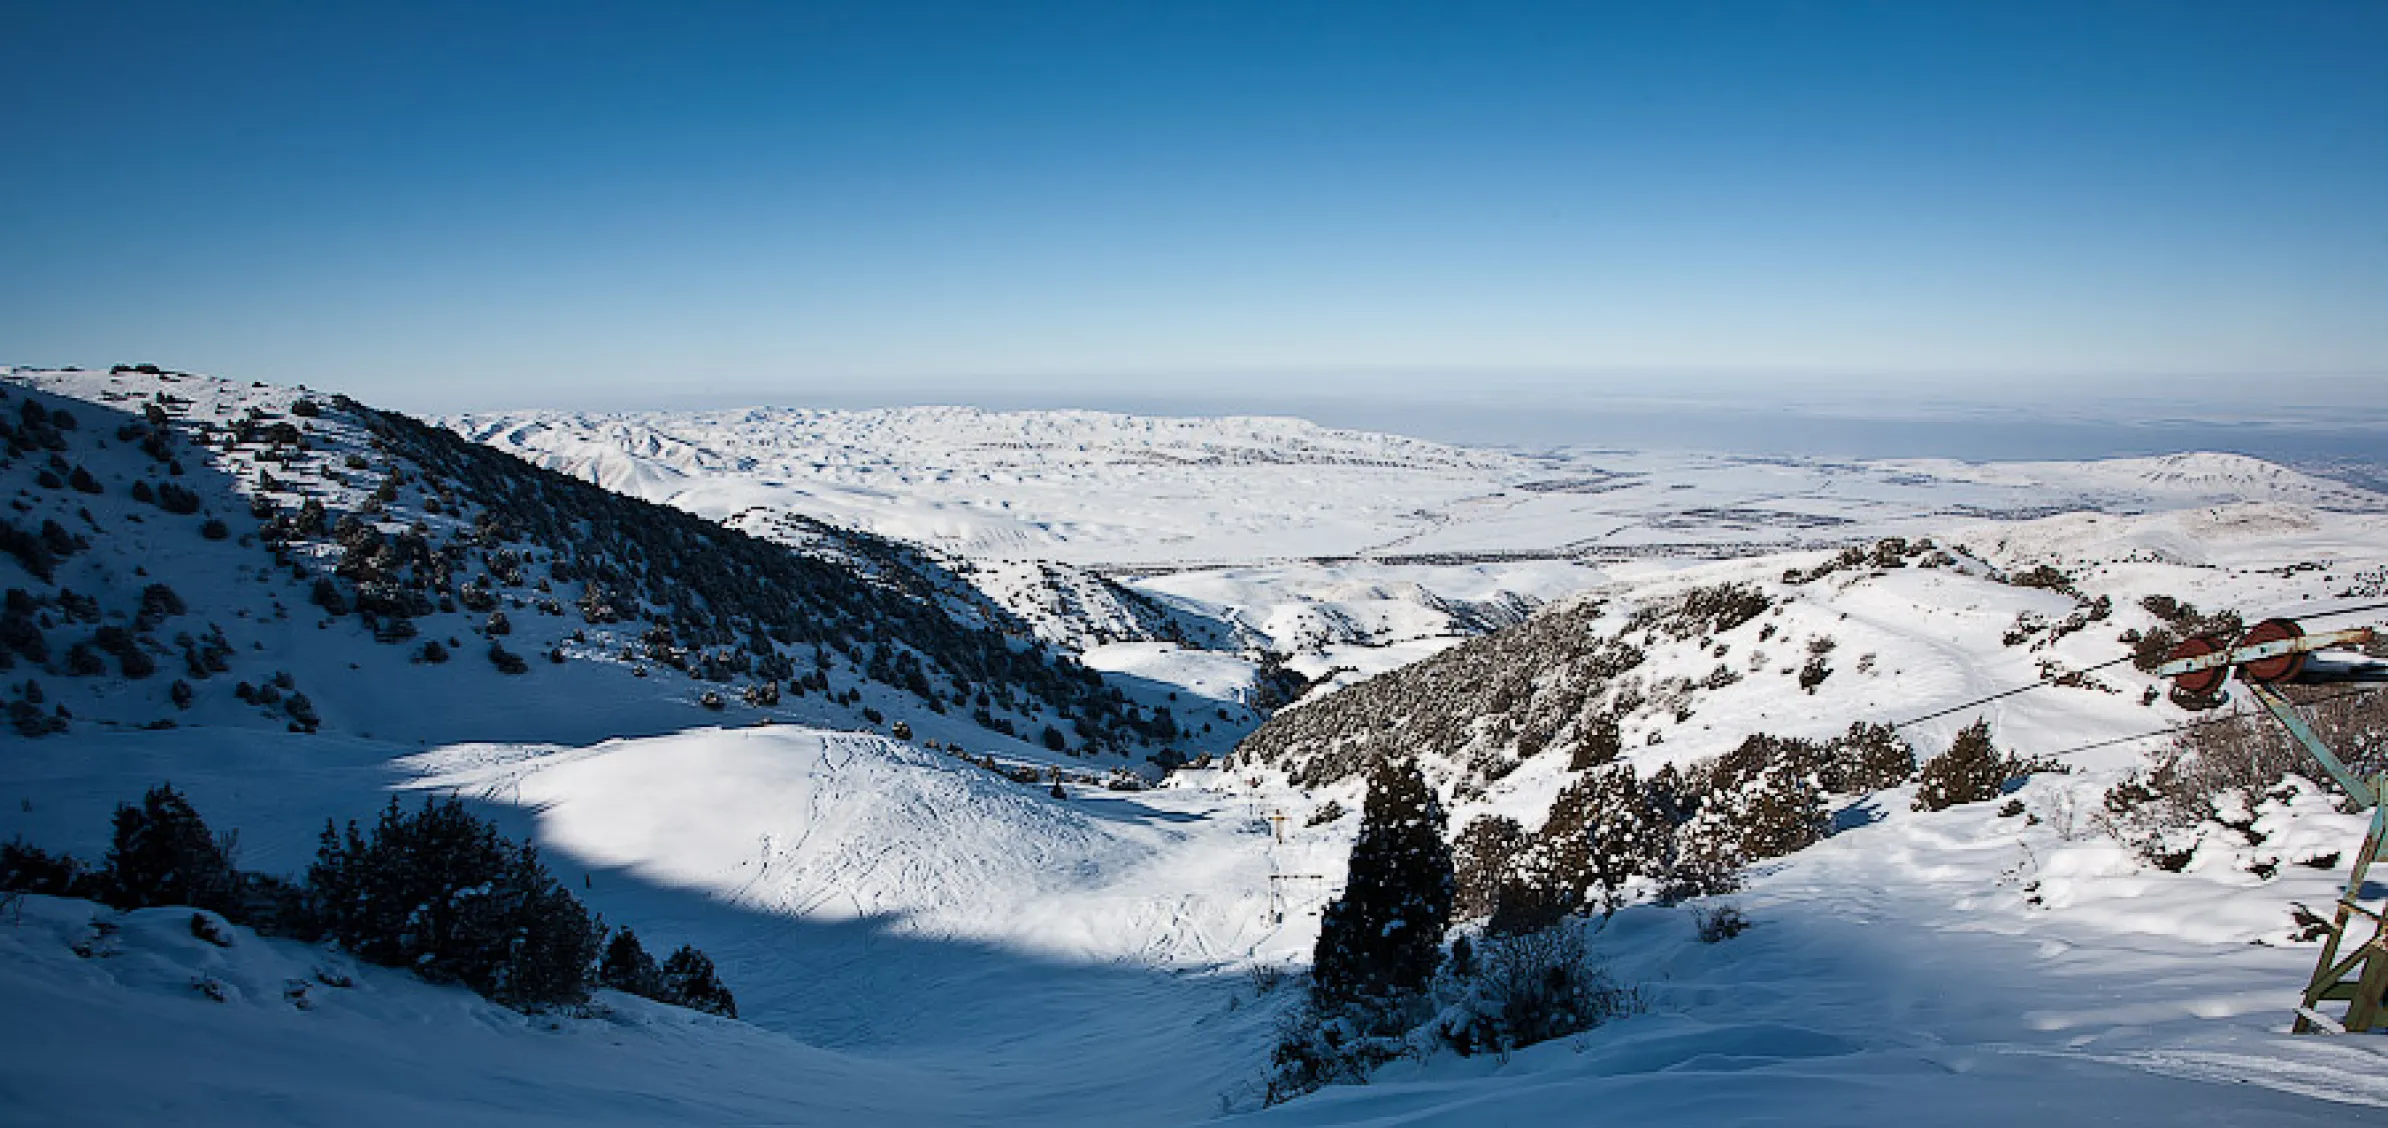 Ak-Tash Mountain Ski Base